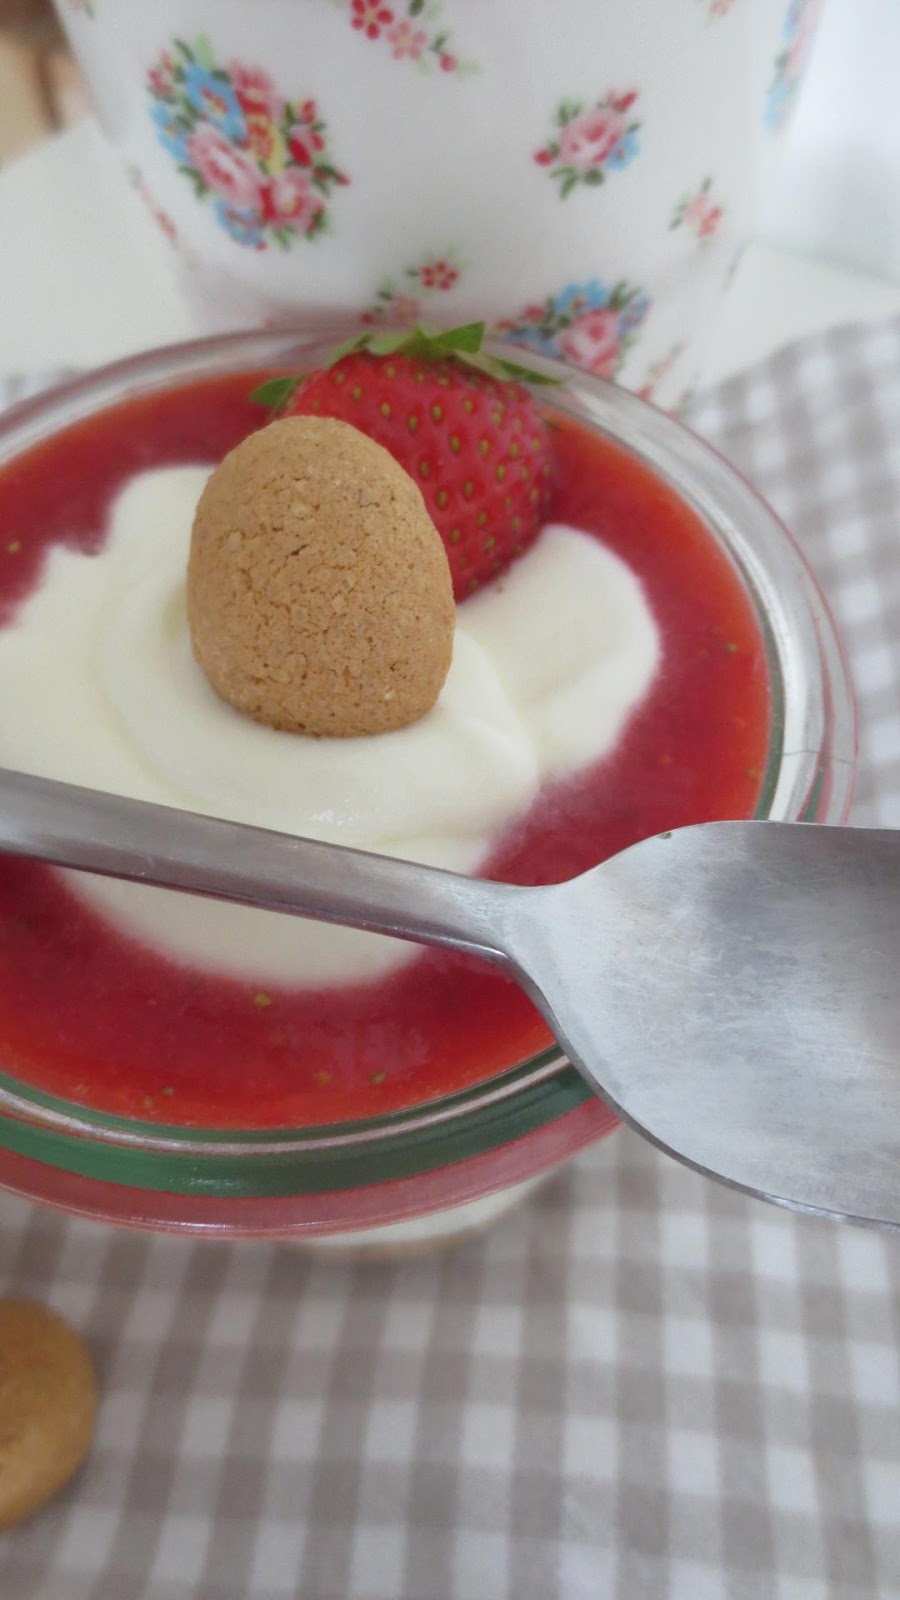 ichliebediesentag: Erdbeerzeit V - Erdbeer-Amarettini Dessert